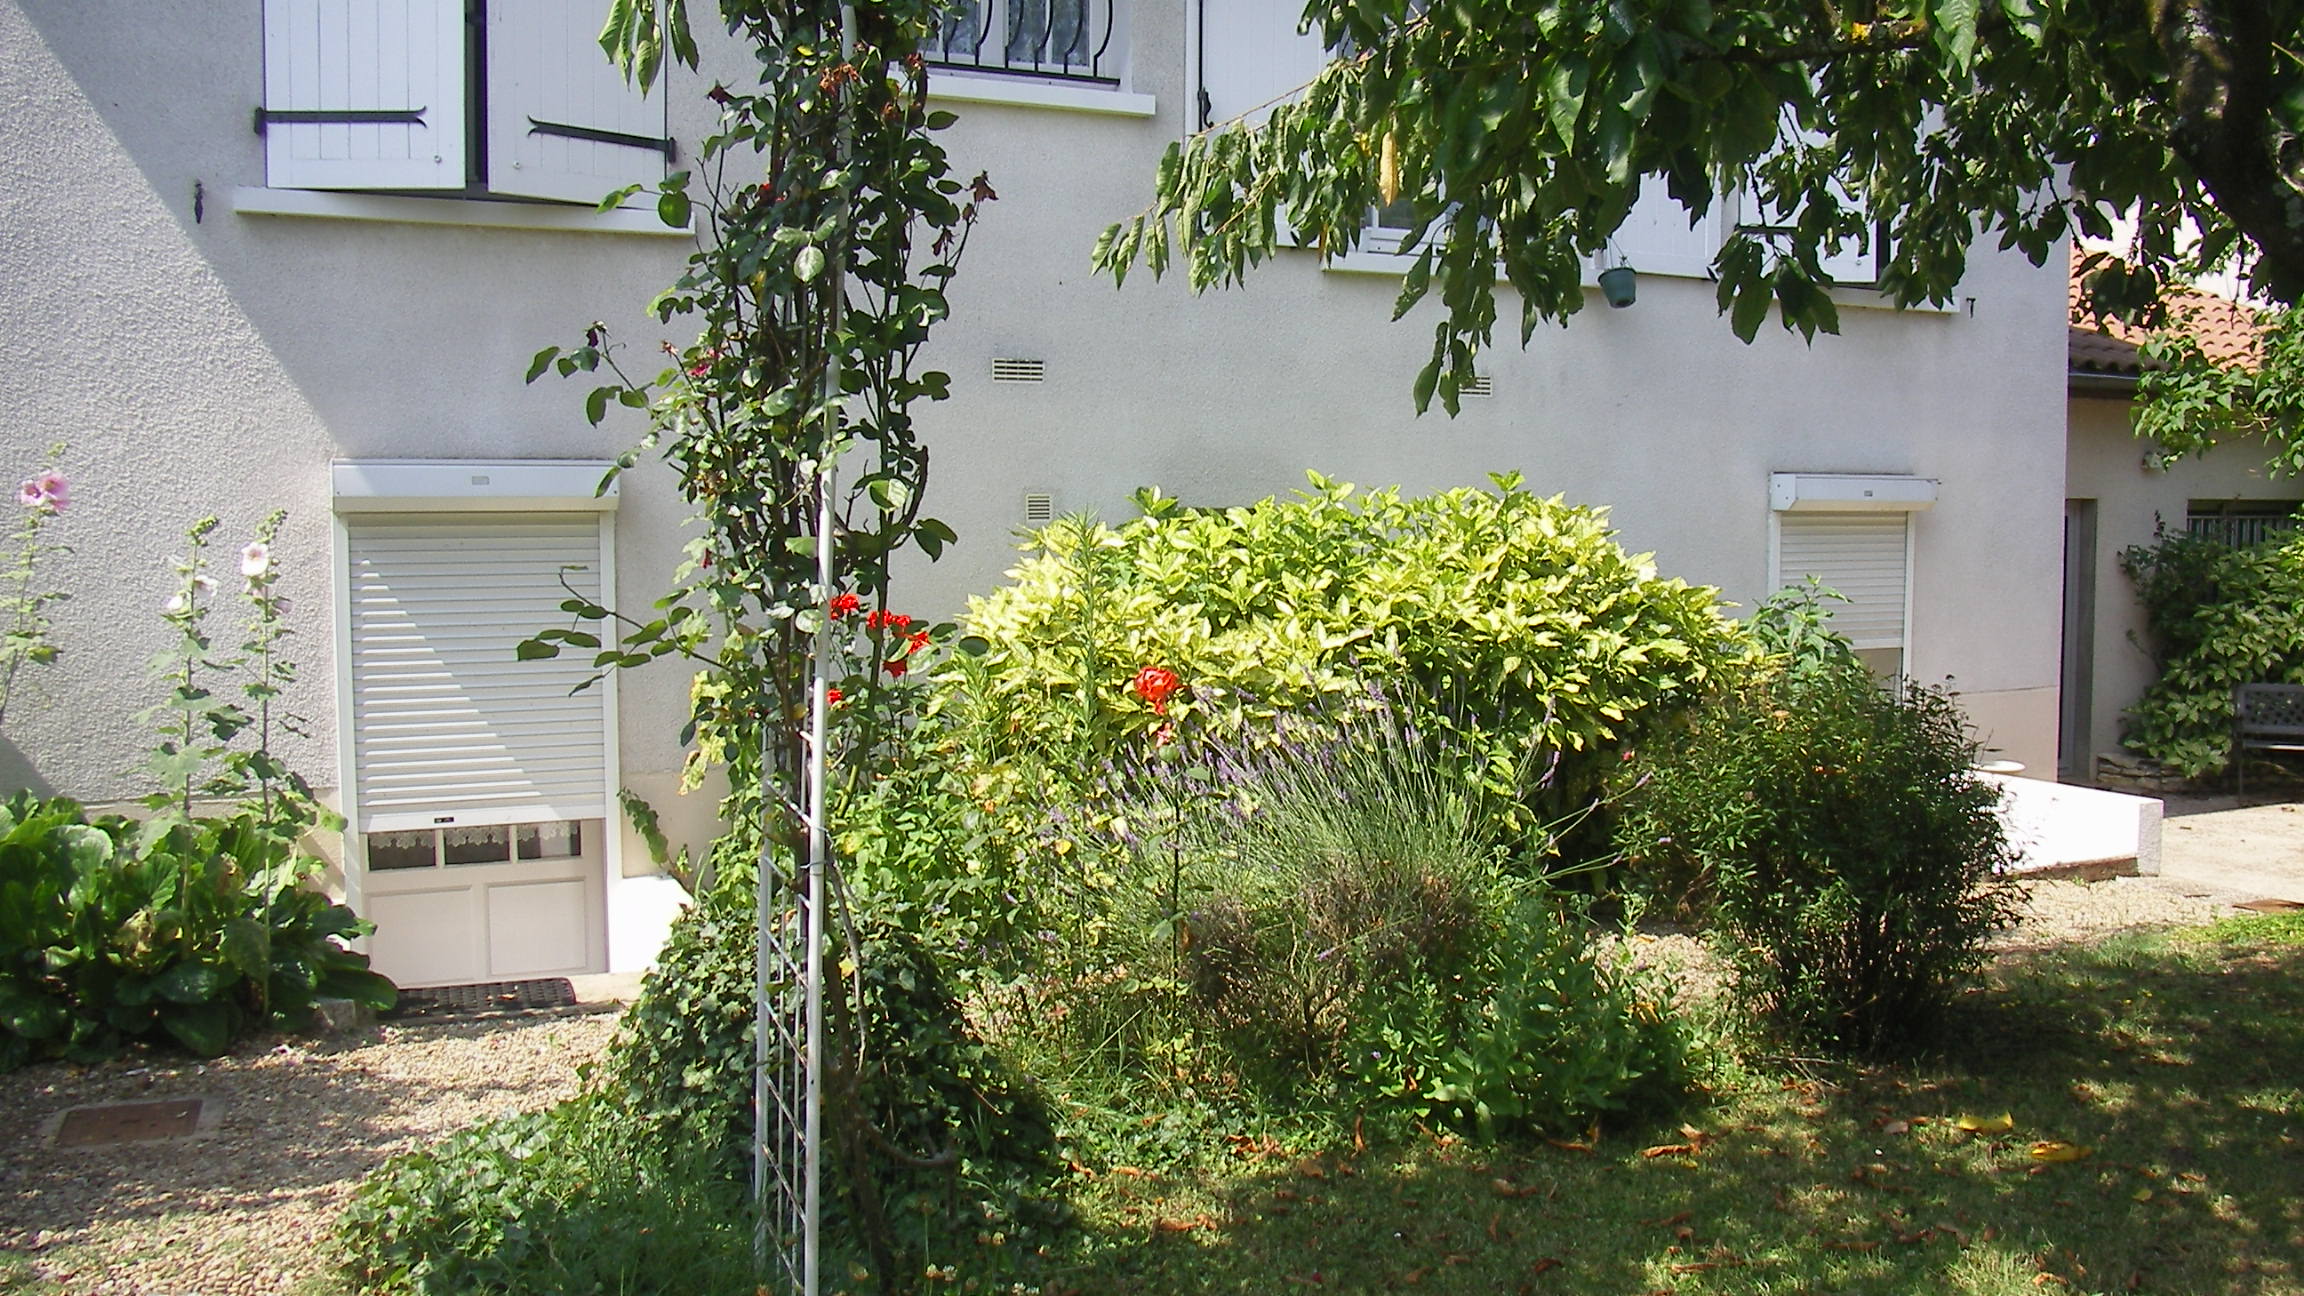 Agence immobilière Nicoullaud achat vente location maison appartement terrain dans la Vienne 86